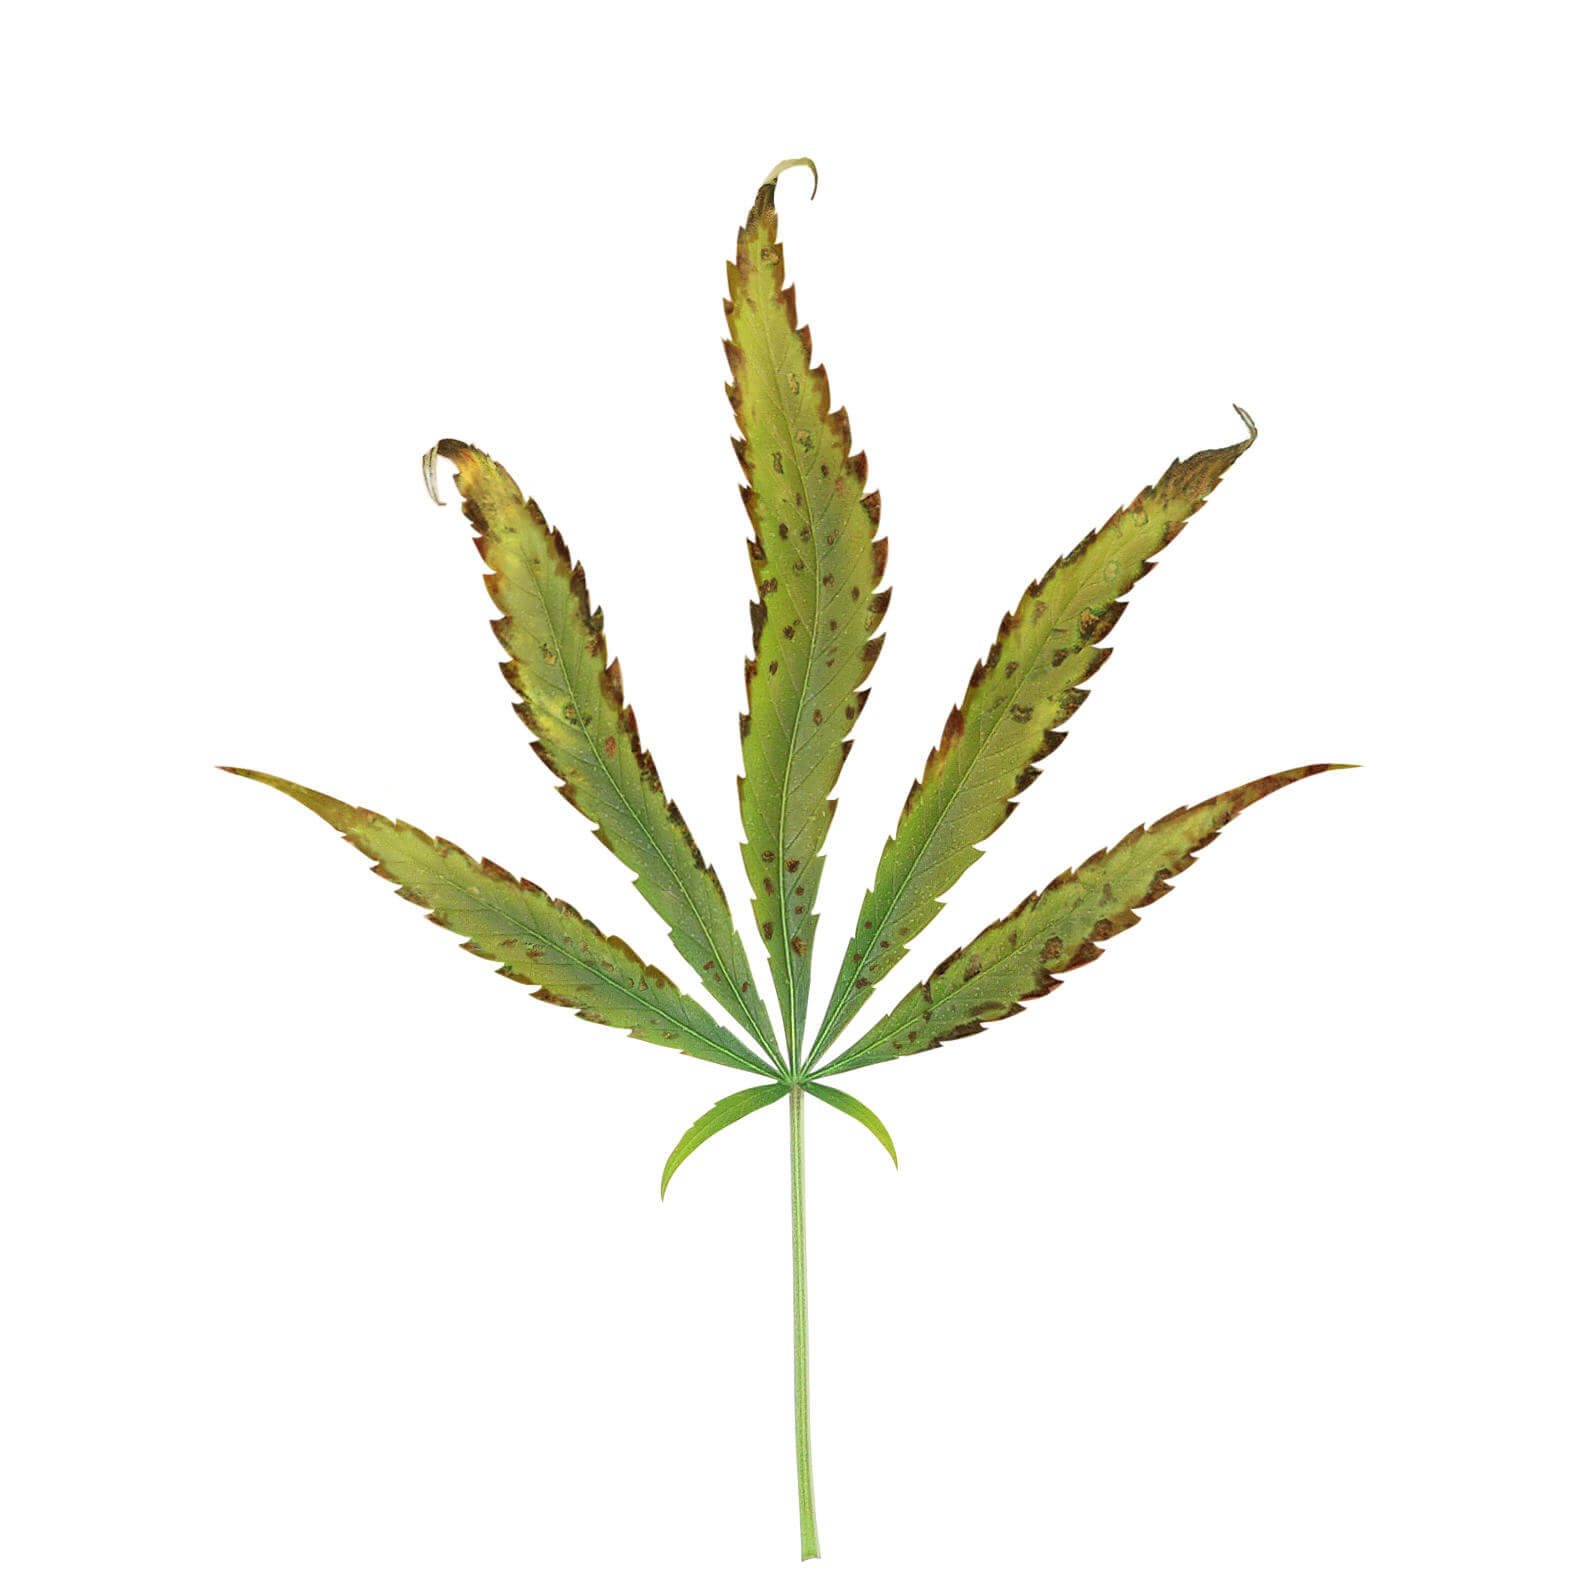 Carencia y exceso de potasio en el cultivo de marihuana